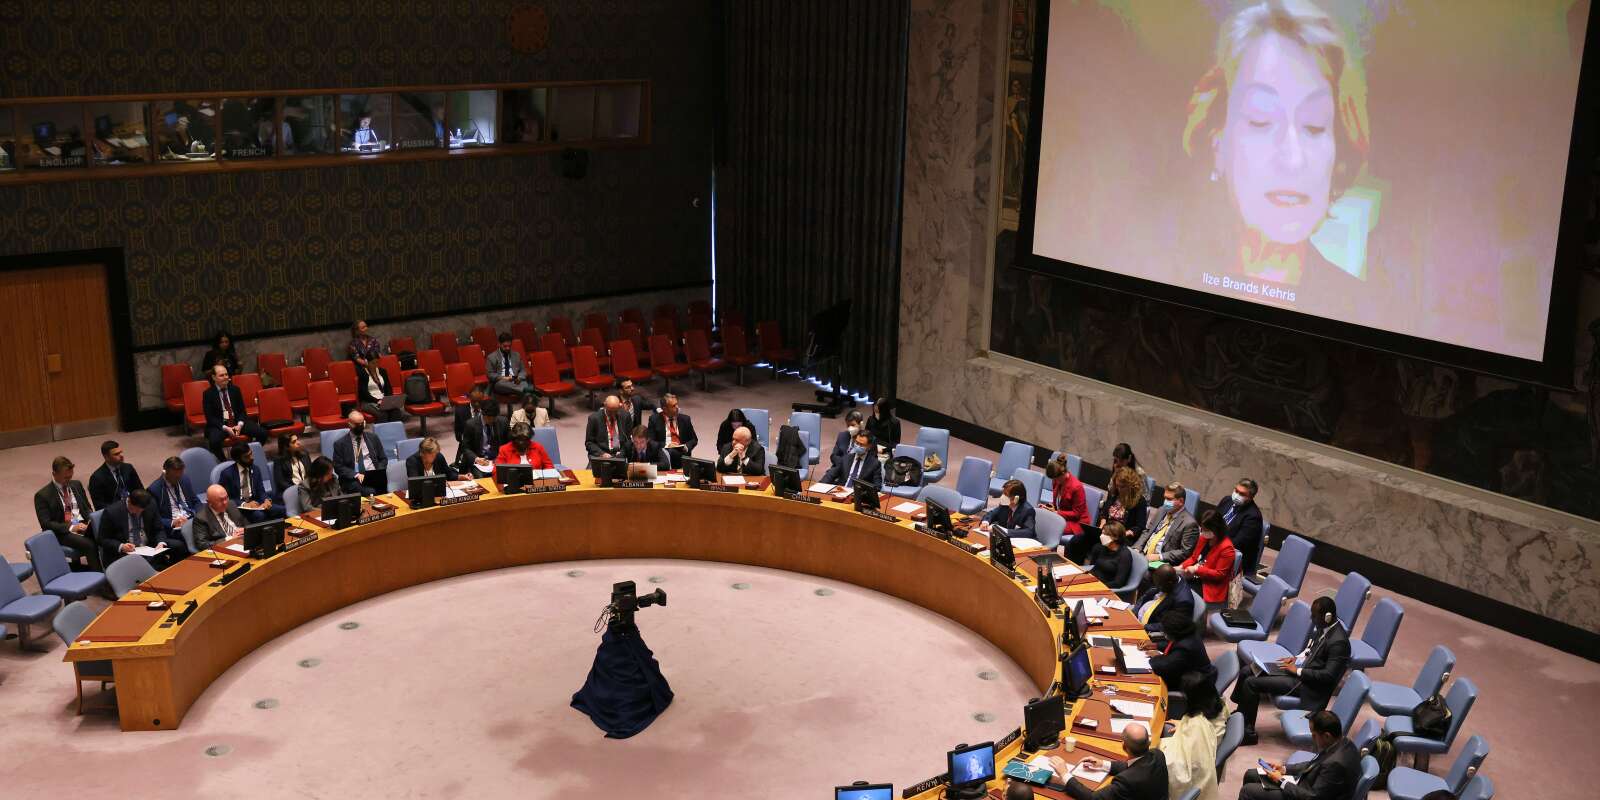 Ilze Brands Kehris, sous-secrétaire générale aux droits de l’homme, s’exprime devant le conseil de sécurité de l’ONU, le 7 septembre 2022.